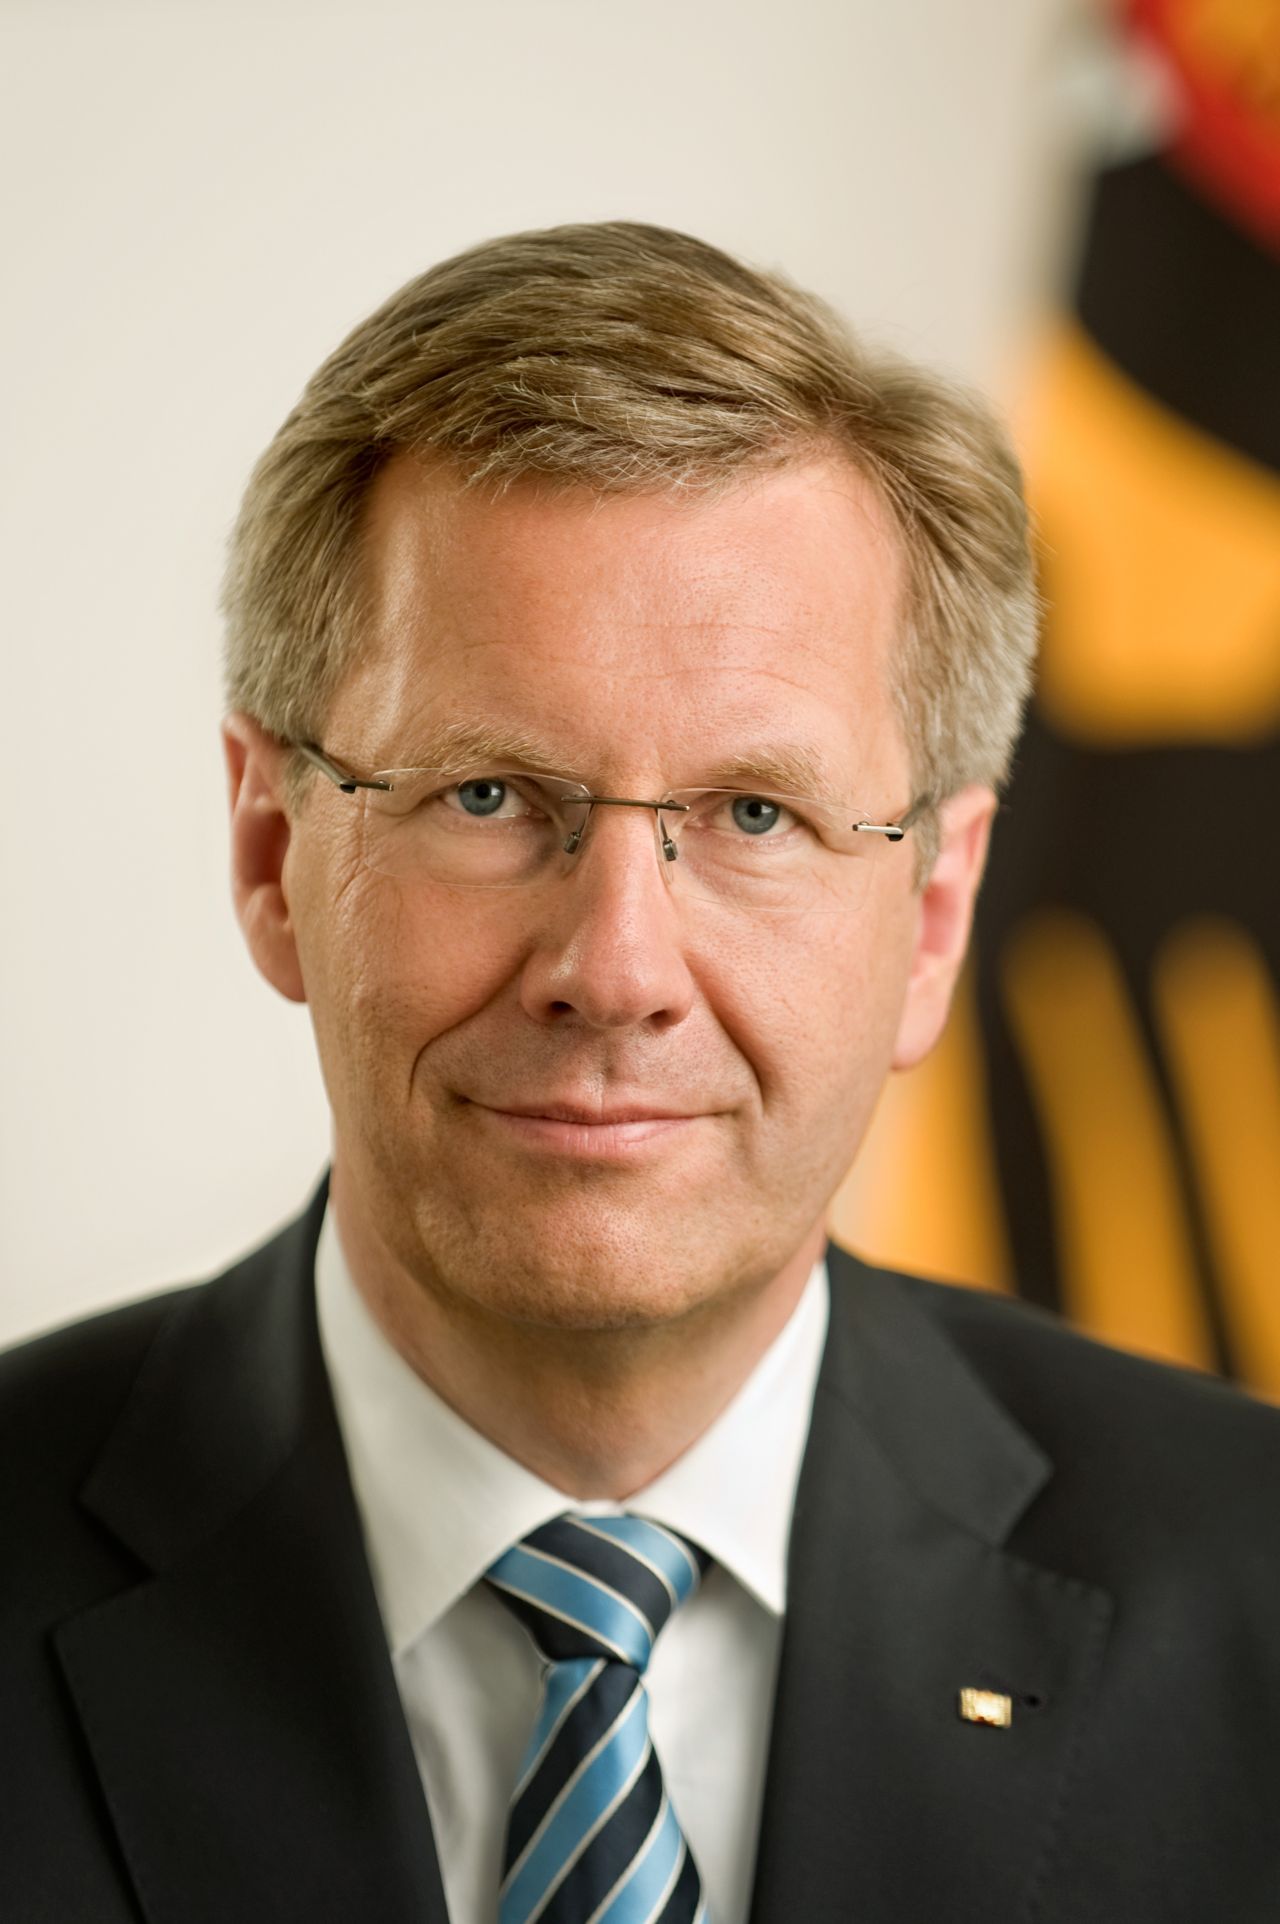 Offizielles Porträt von Christian Wulff, Bundespräsident der Bundesrepublik Deutschland (2010-2012)